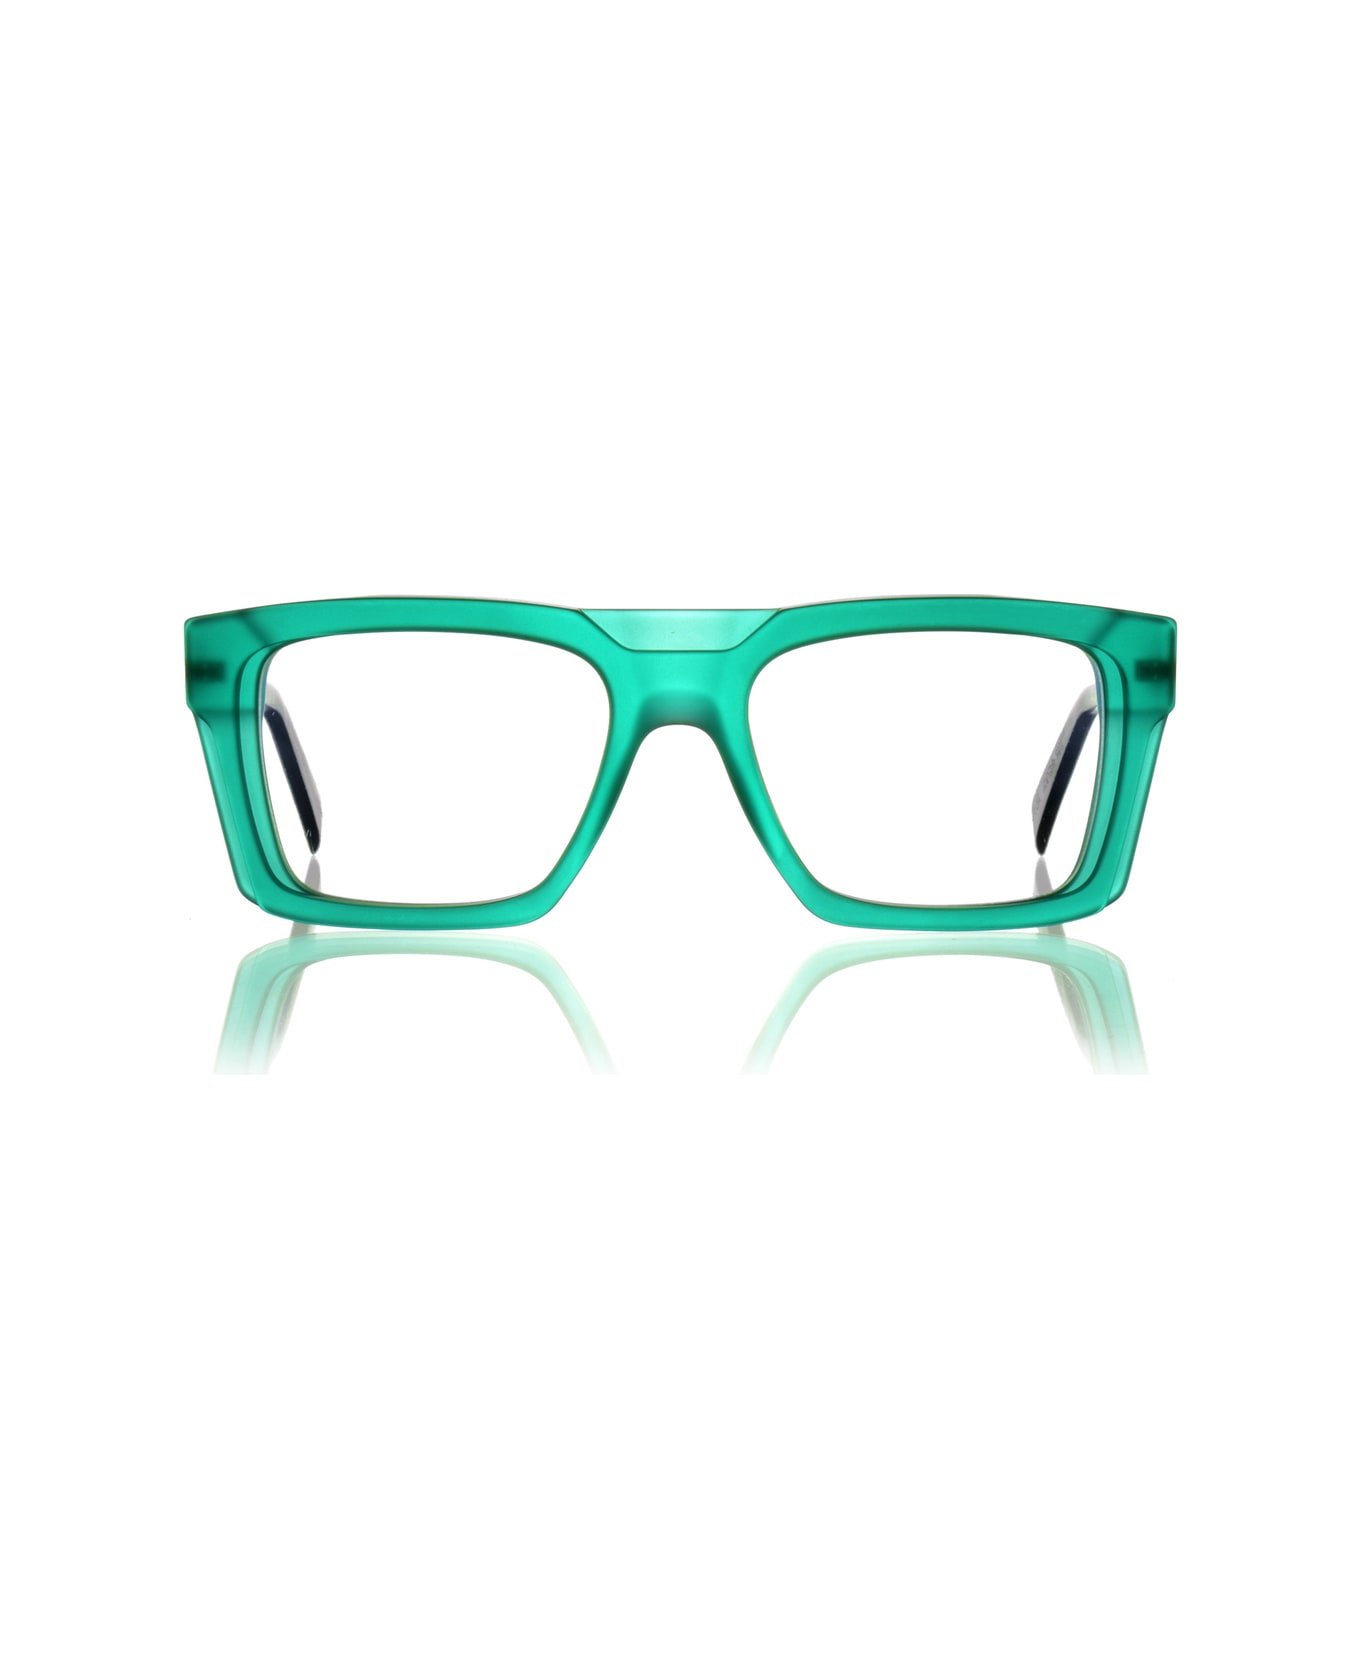 Kirk & Kirk William F4/s Jungle Glasses - Verde アイウェア